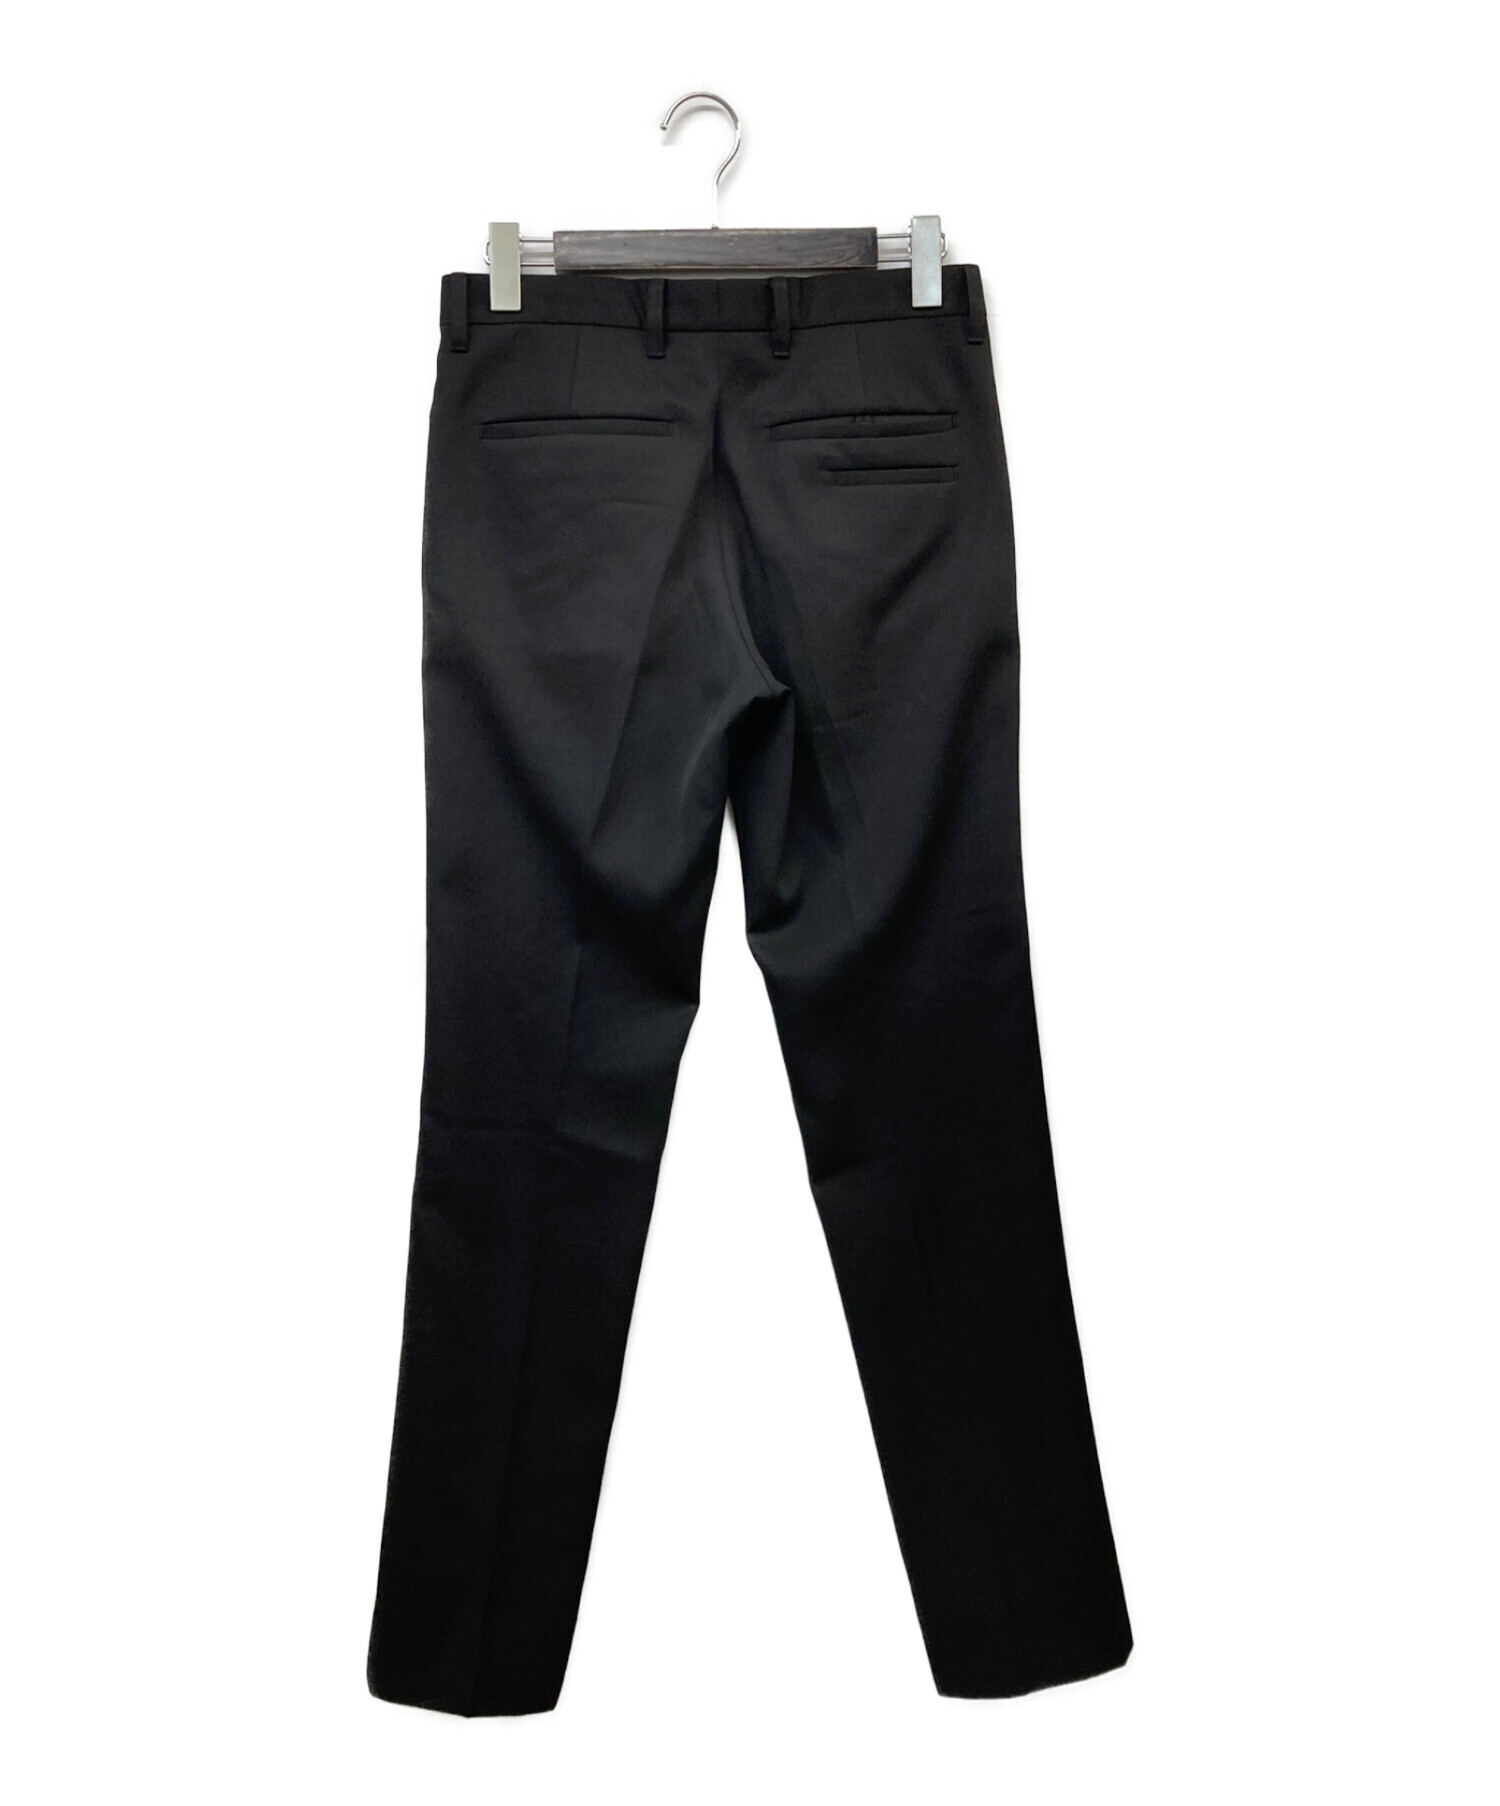 th products (ティーエイチプロダクツ) LOWITT Slim Tailored Pants ブラック サイズ:1